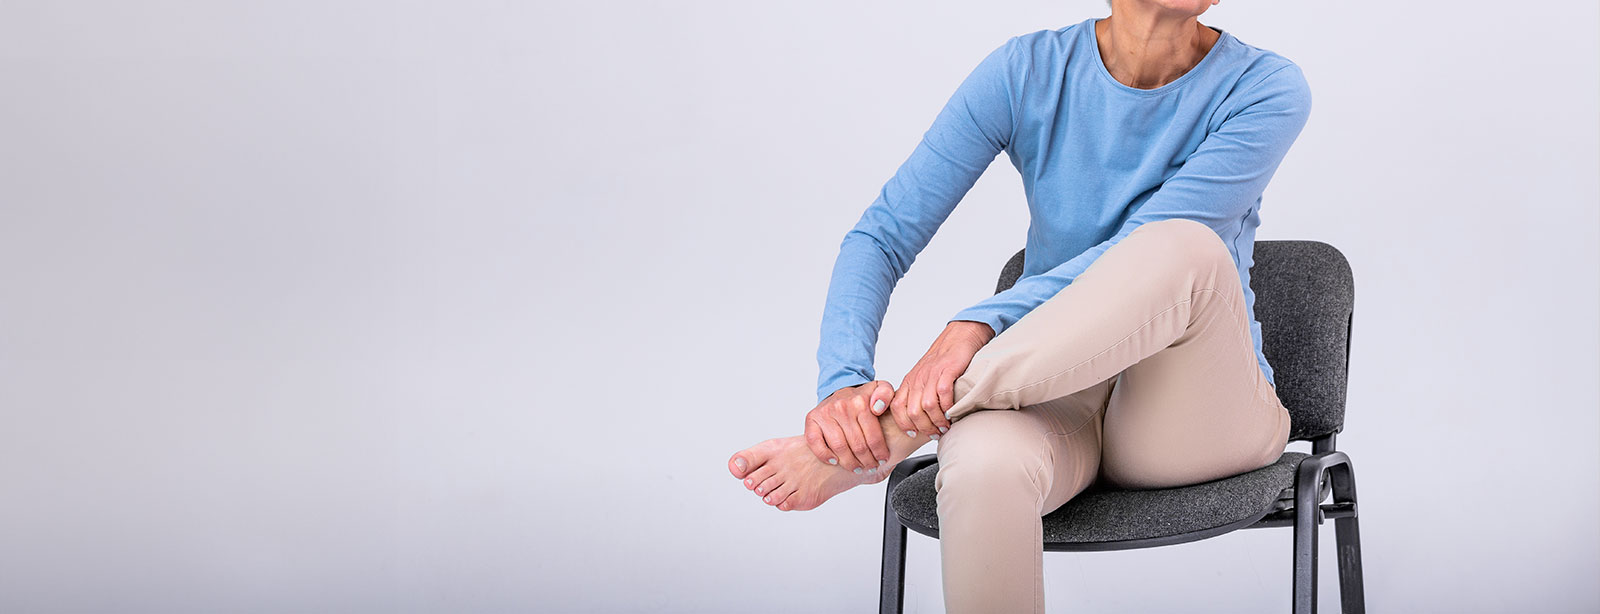 ¿Por qué te duelen las piernas al levantarte después de estar sentado?